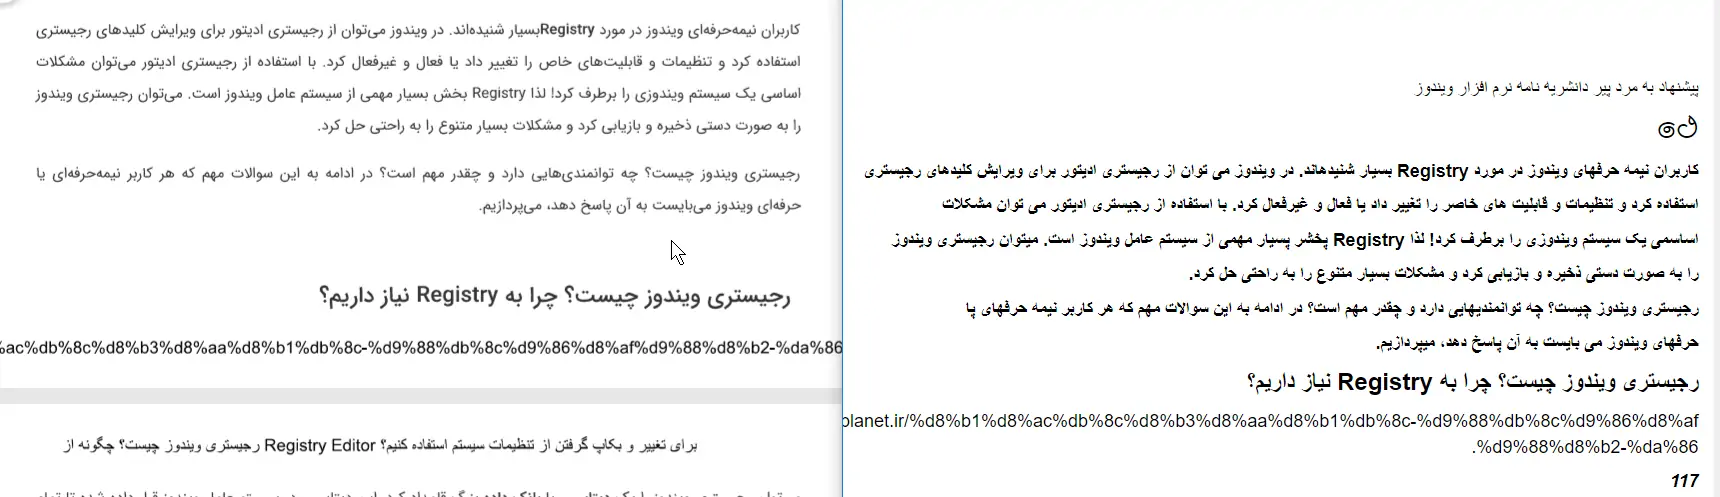 آموزش تبدیل PDF فارسی به Word‌ یا متن ساده به کمک Google Docs و Word 2016